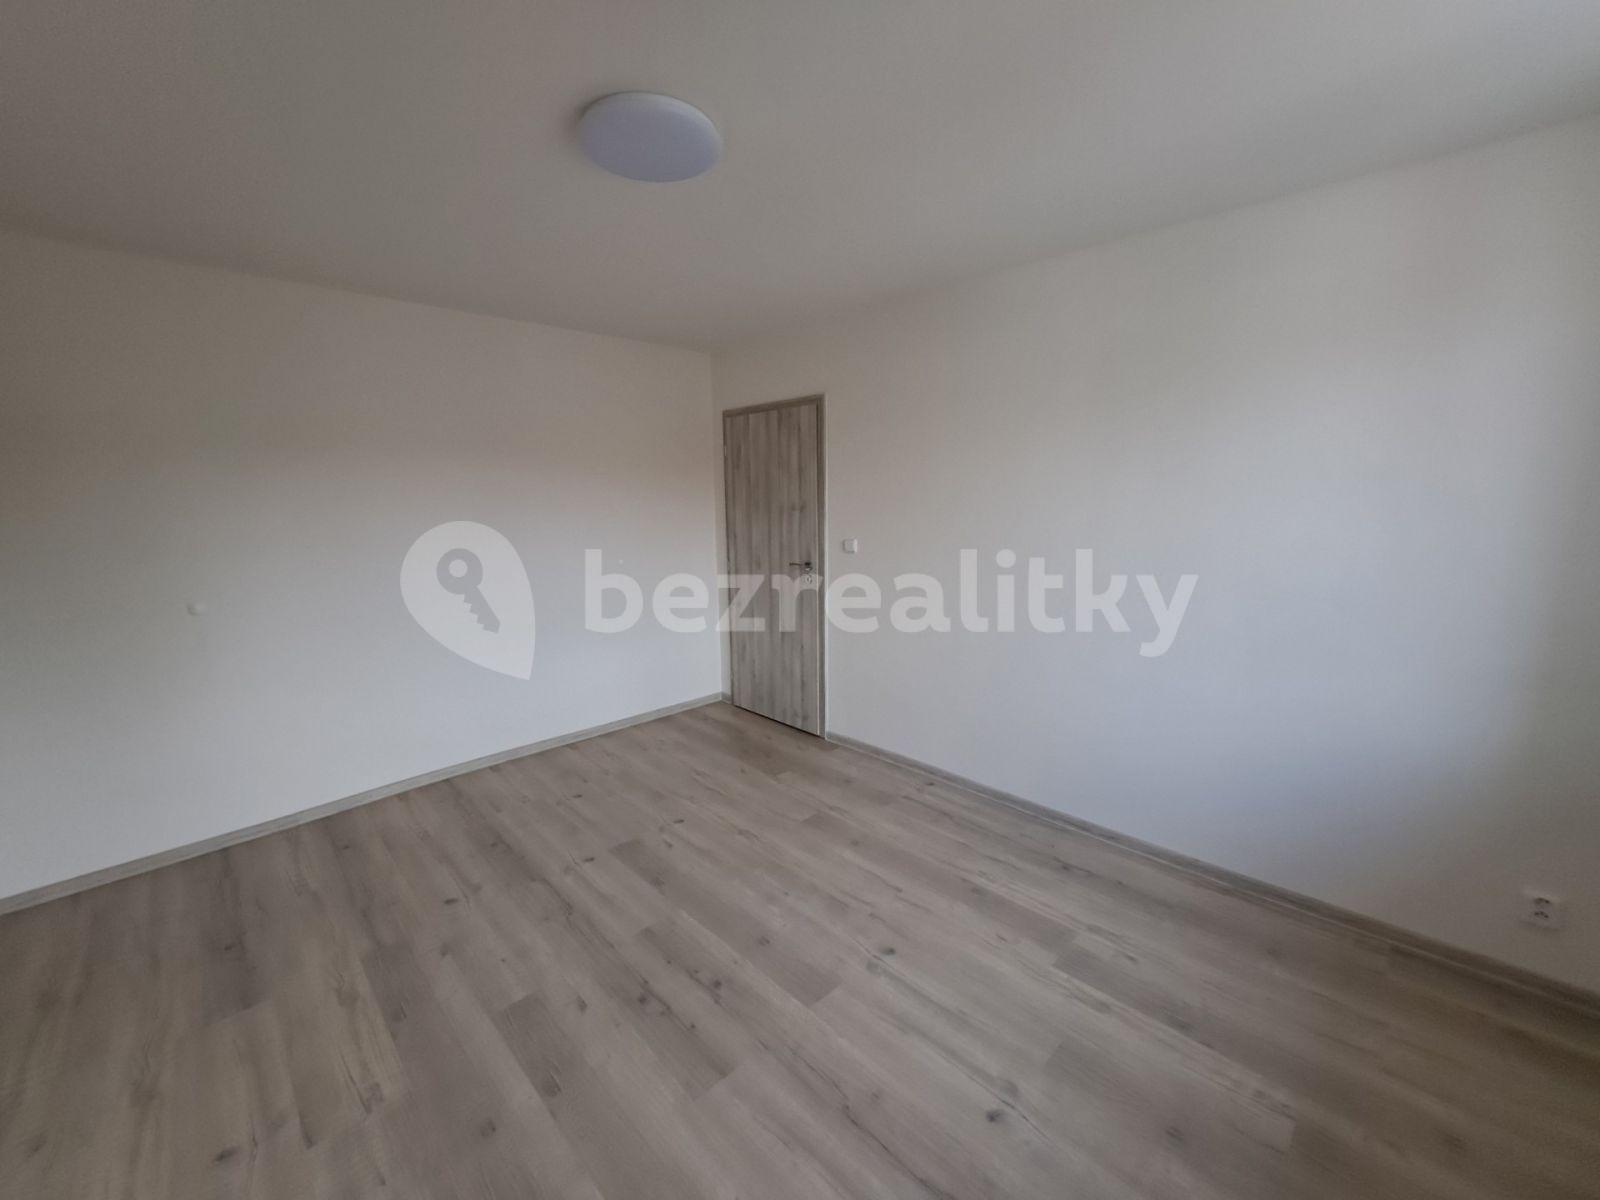 2 bedroom with open-plan kitchen flat to rent, 55 m², Bratrská, Bystřice nad Pernštejnem, Vysočina Region